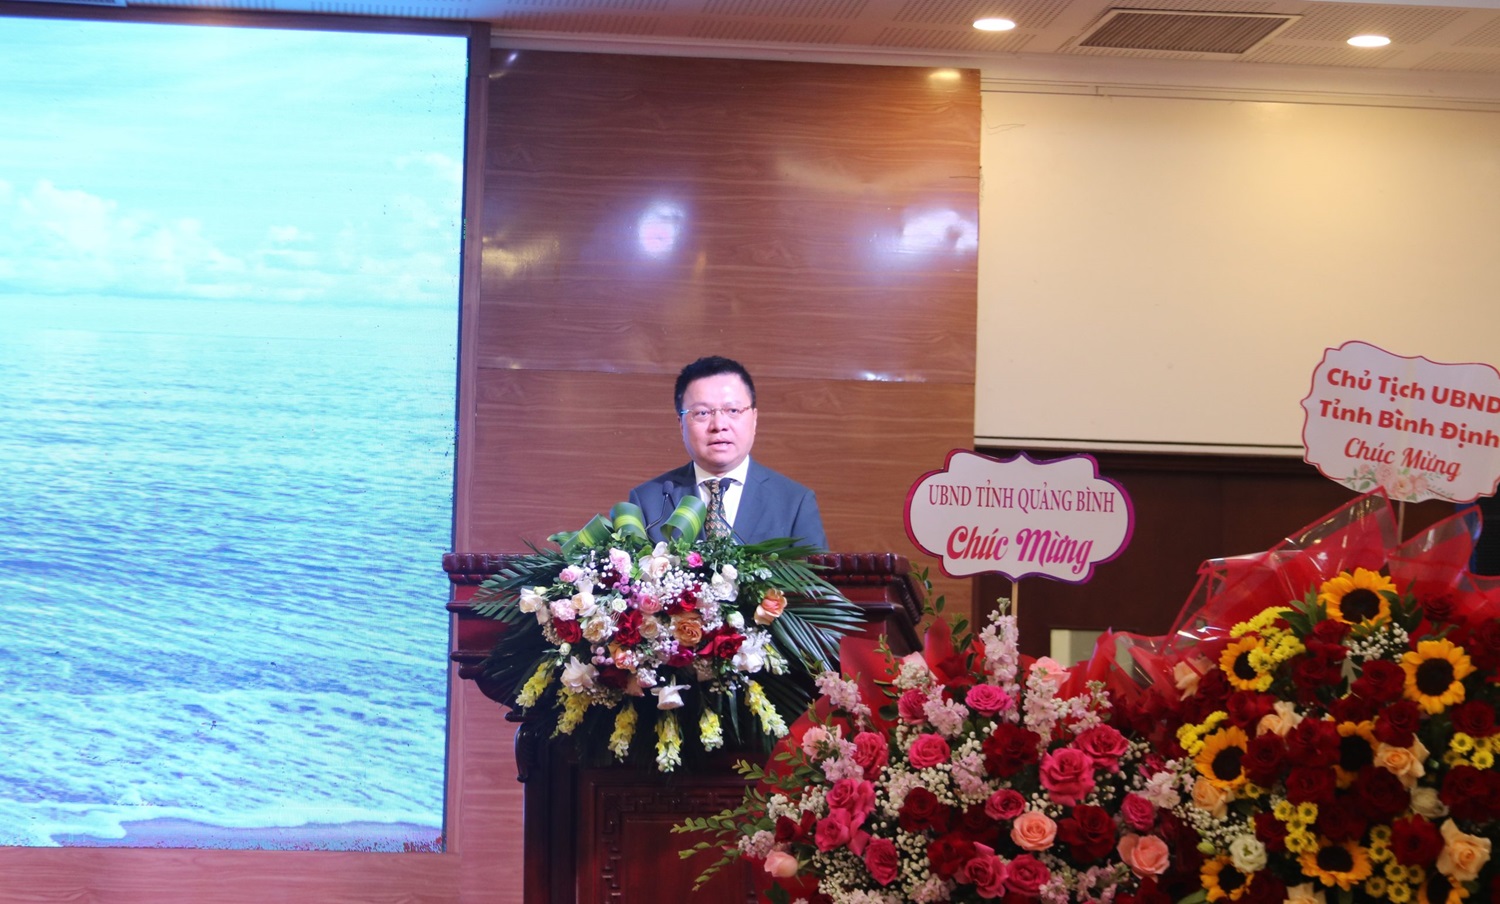 Ông Lê Quốc Minh, Ủy viên Trung ương Đảng, Phó trưởng Ban Tuyên giáo T.Ư, Tổng biên tập Báo Nhân dân, Chủ tịch Hội Nhà báo Việt Nam đã đến dự và có phát biểu tại buổi lễ.